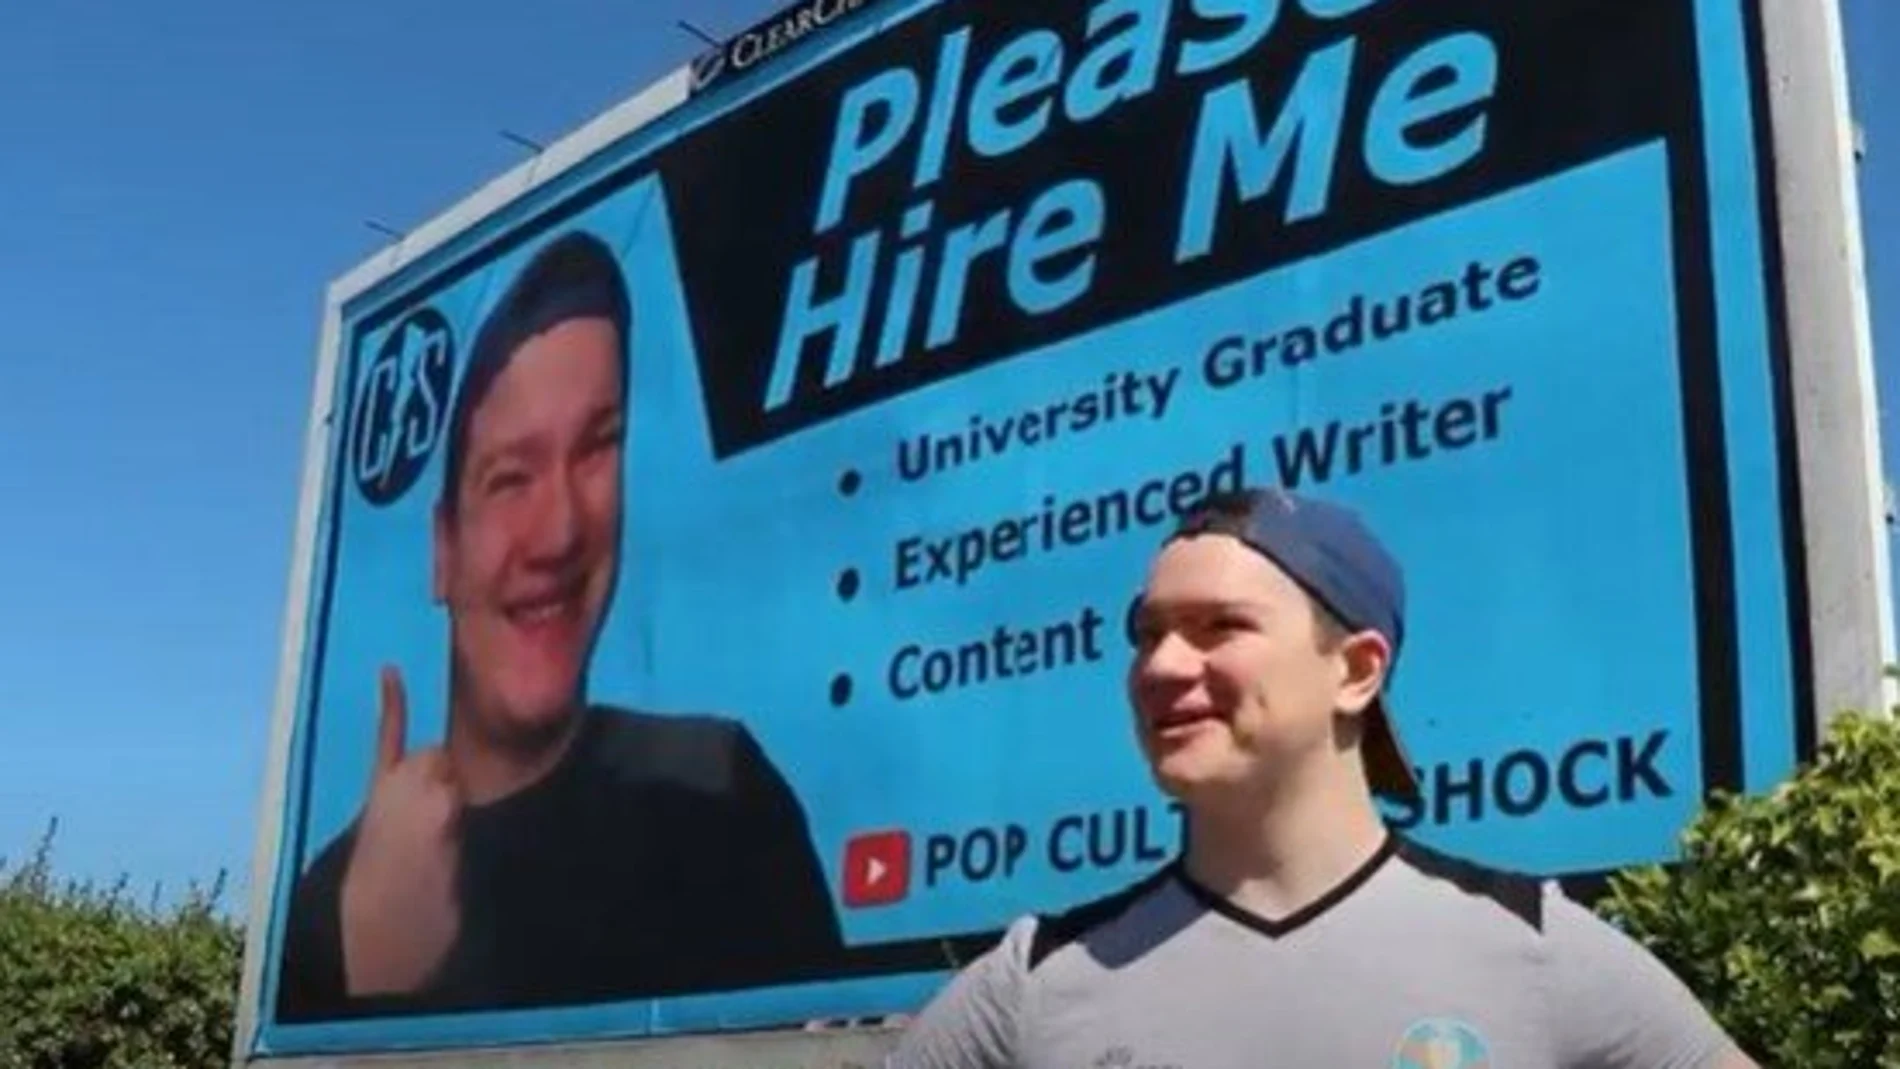 Un hombre en Irlanda del Norte invierte en una valla publicitaria para encontrar trabajo